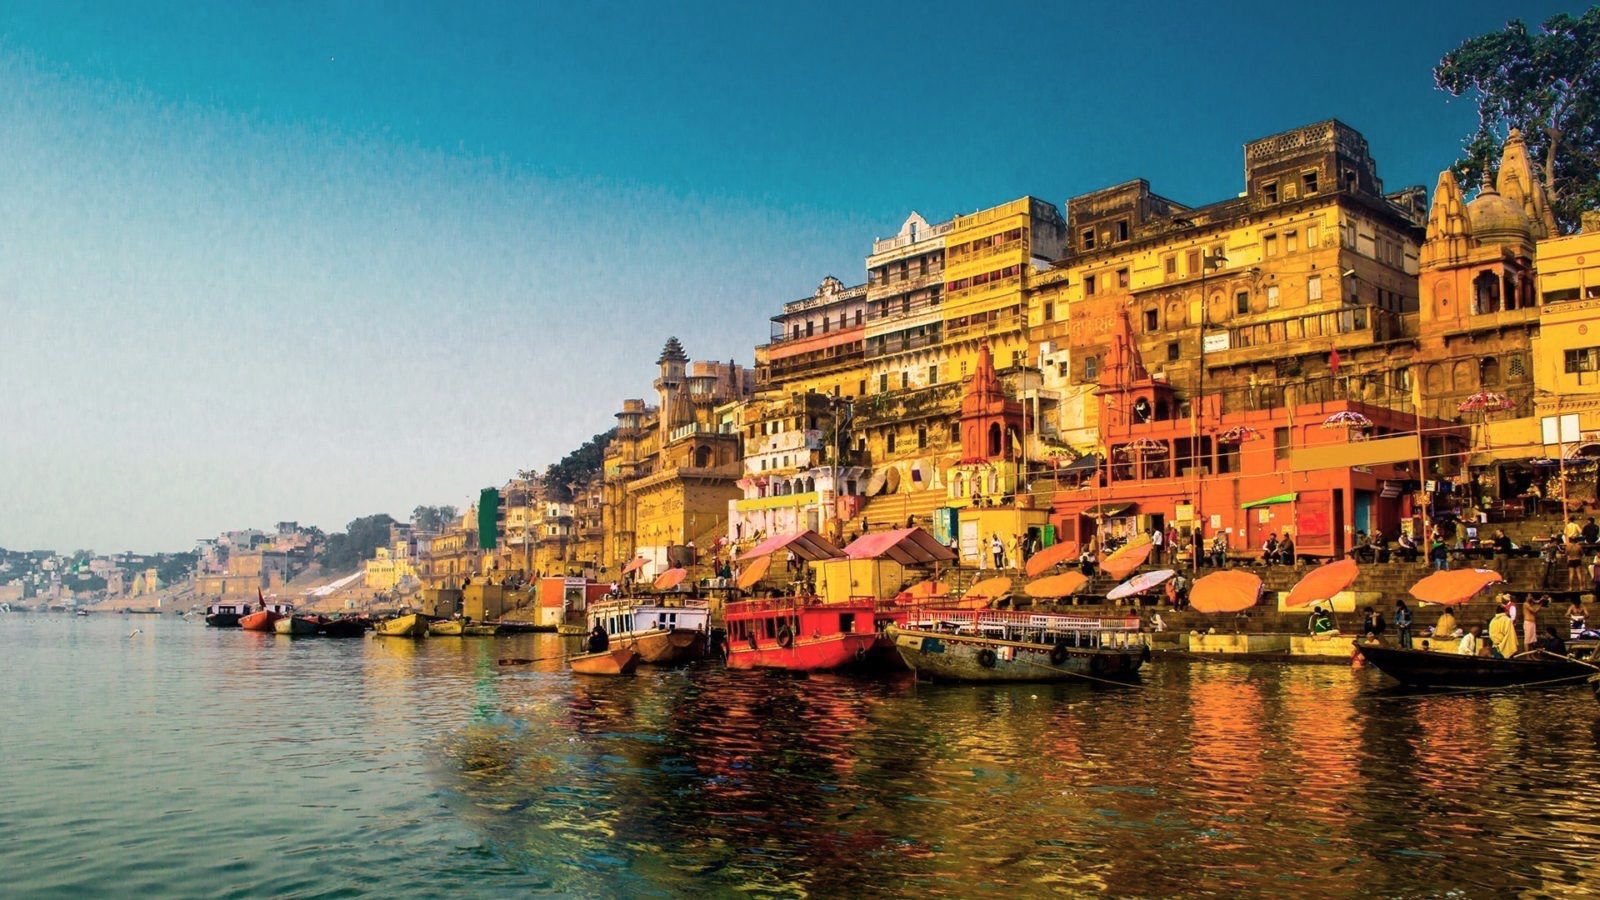 Varanasi+at+dawn+%28google+image%29.jpg